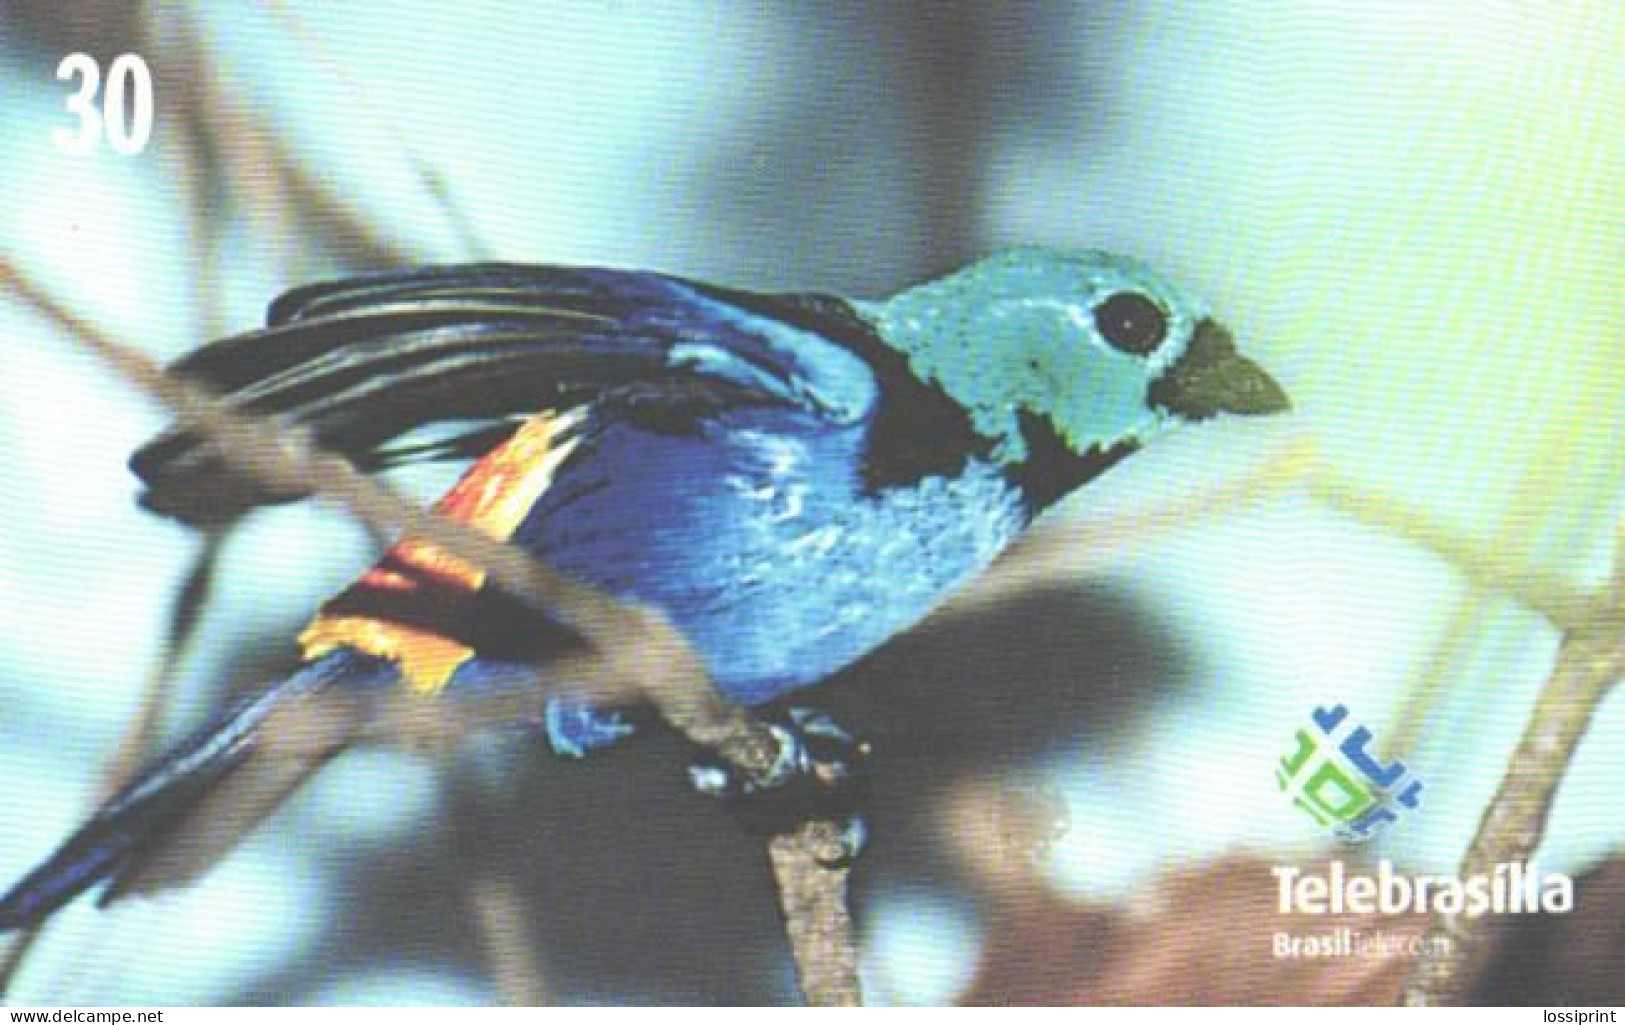 Brazil:Brasil:Used Phonecard, Telebrasilia, 30 Units, Bird, Tangara Seledon - Brasilien